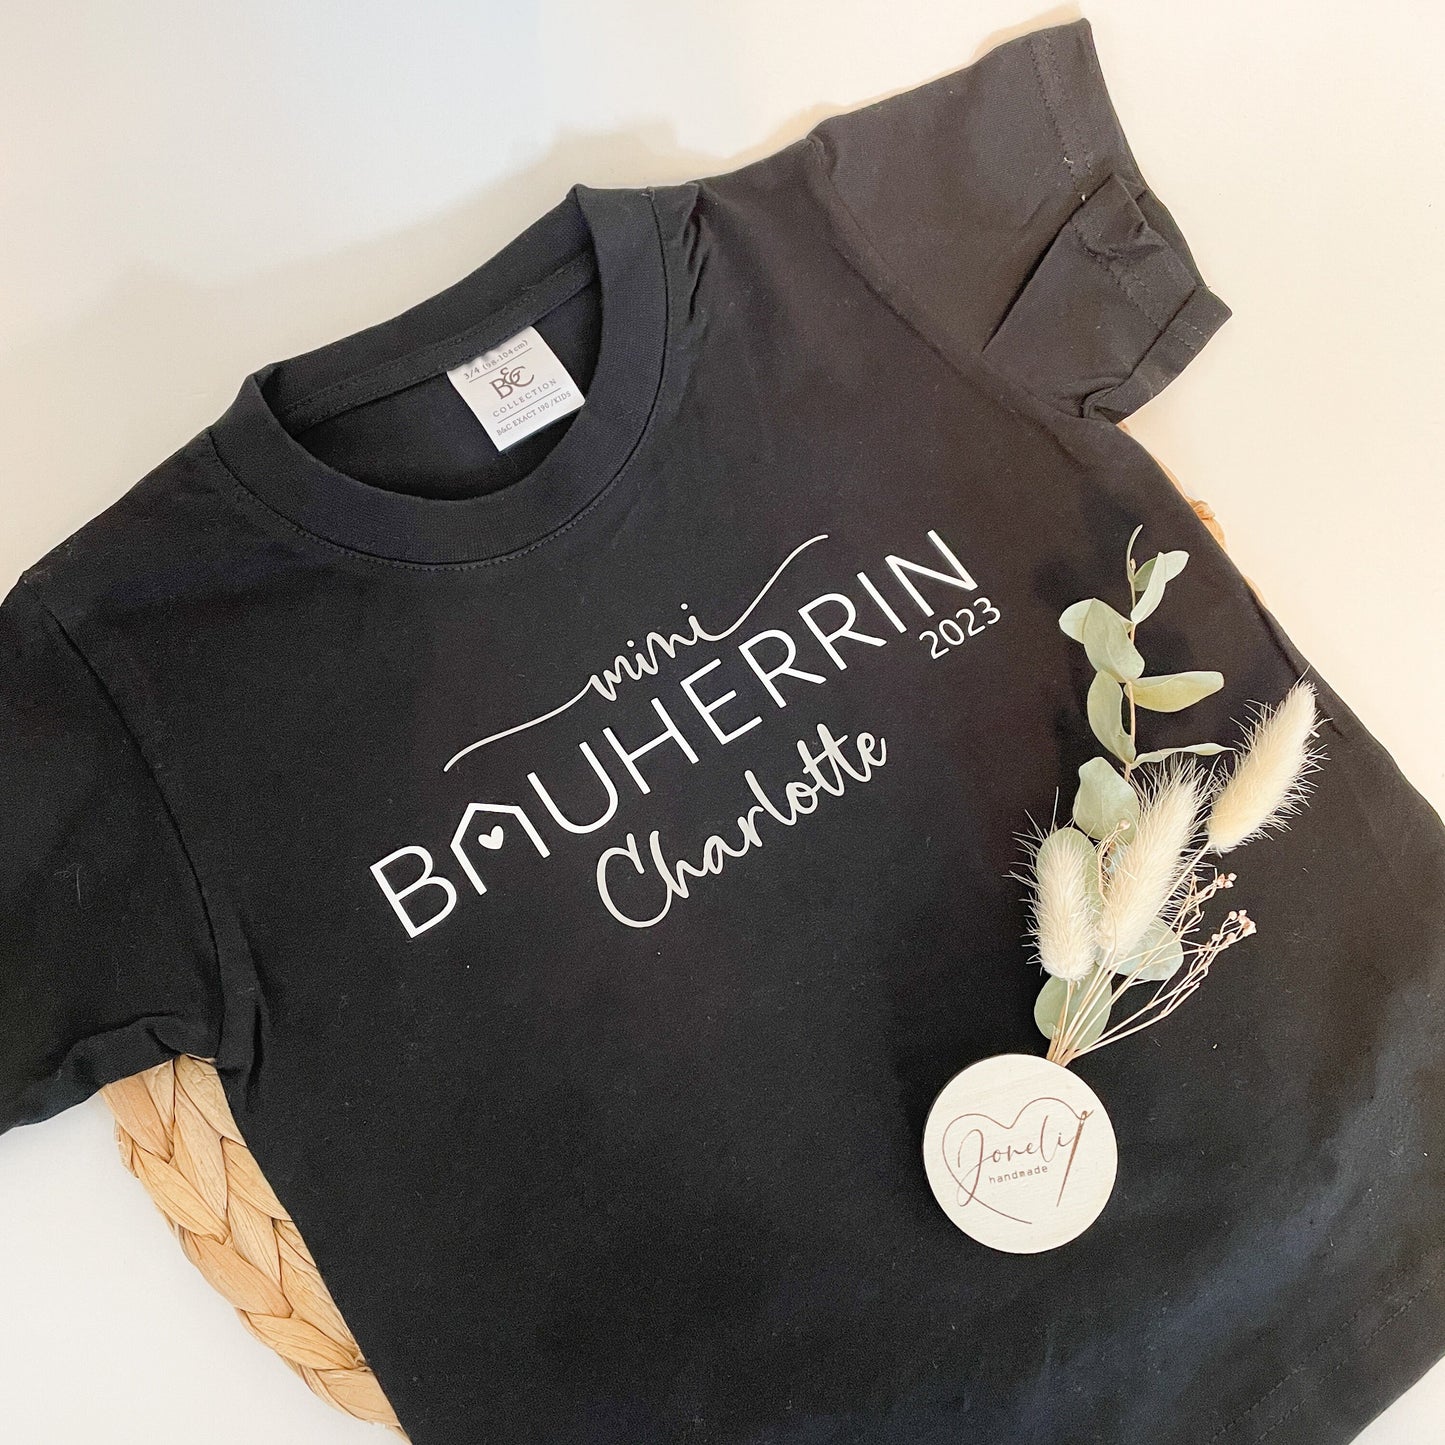 BAUHERR / BAUHERRIN personalisiertes T-Shirt / Geschenk für Bauherren